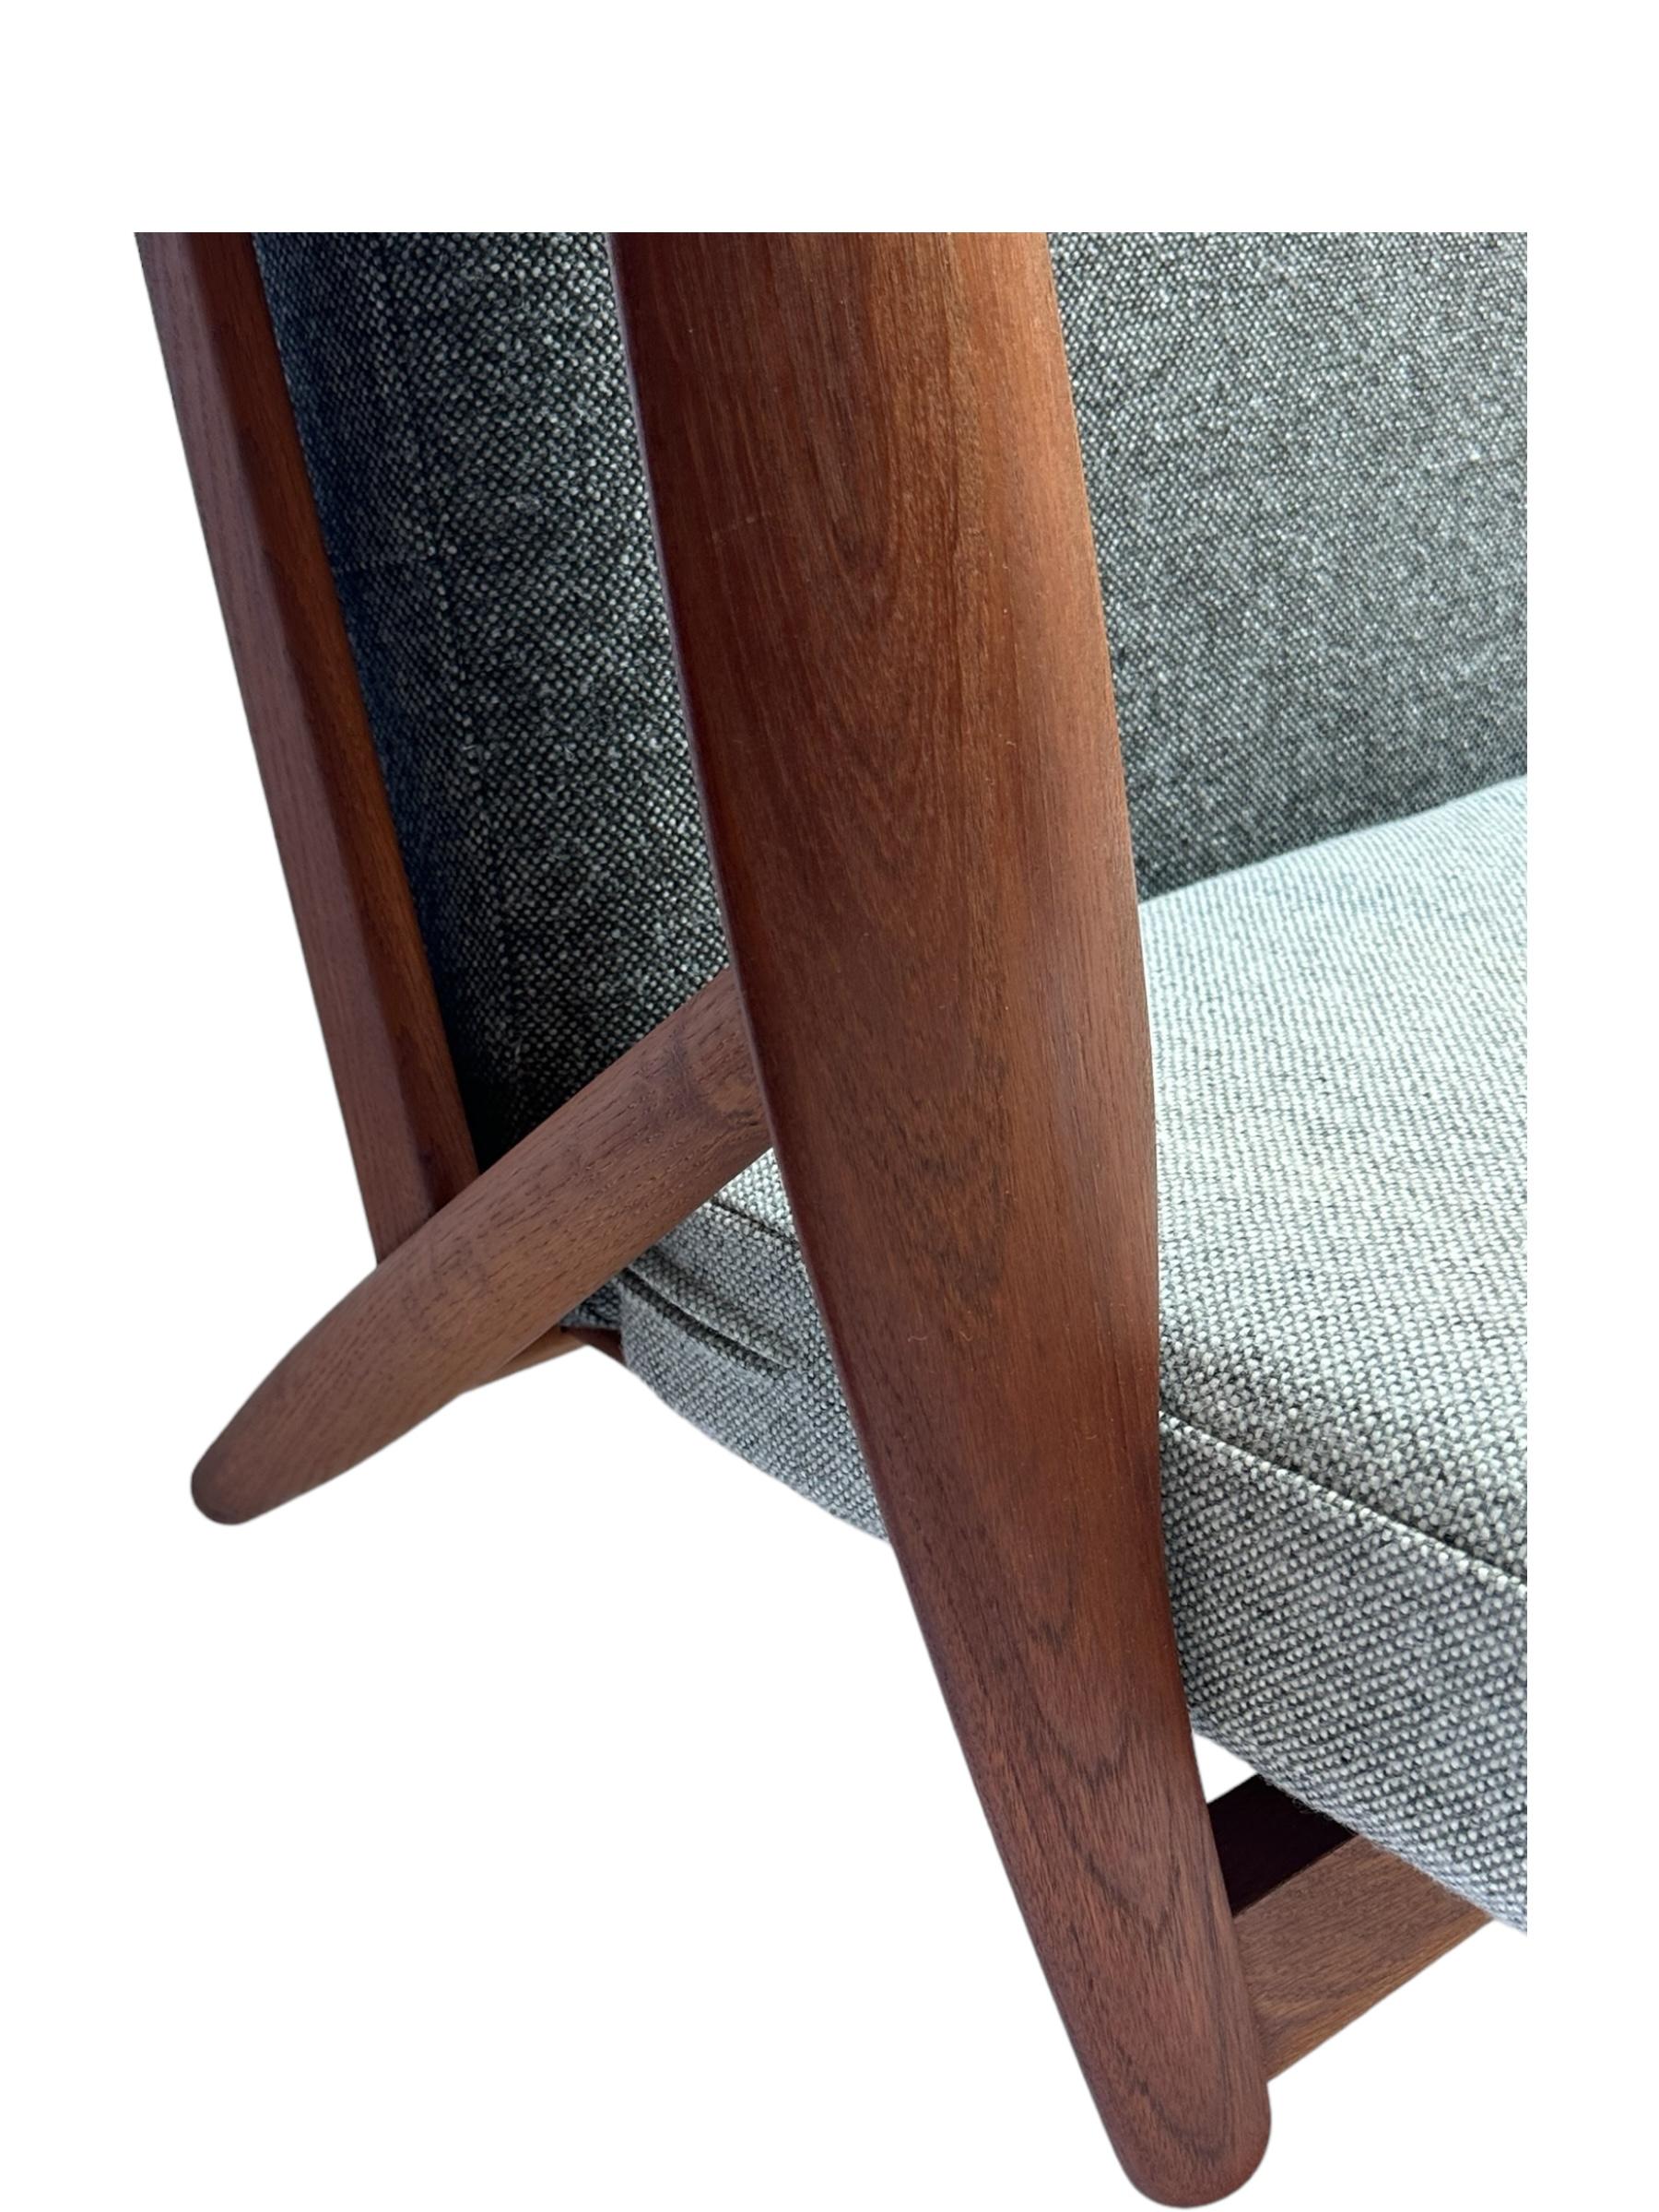 Hans J. Wegner for Getama Signed Sofa with new Mataram Upholstery For Sale 4